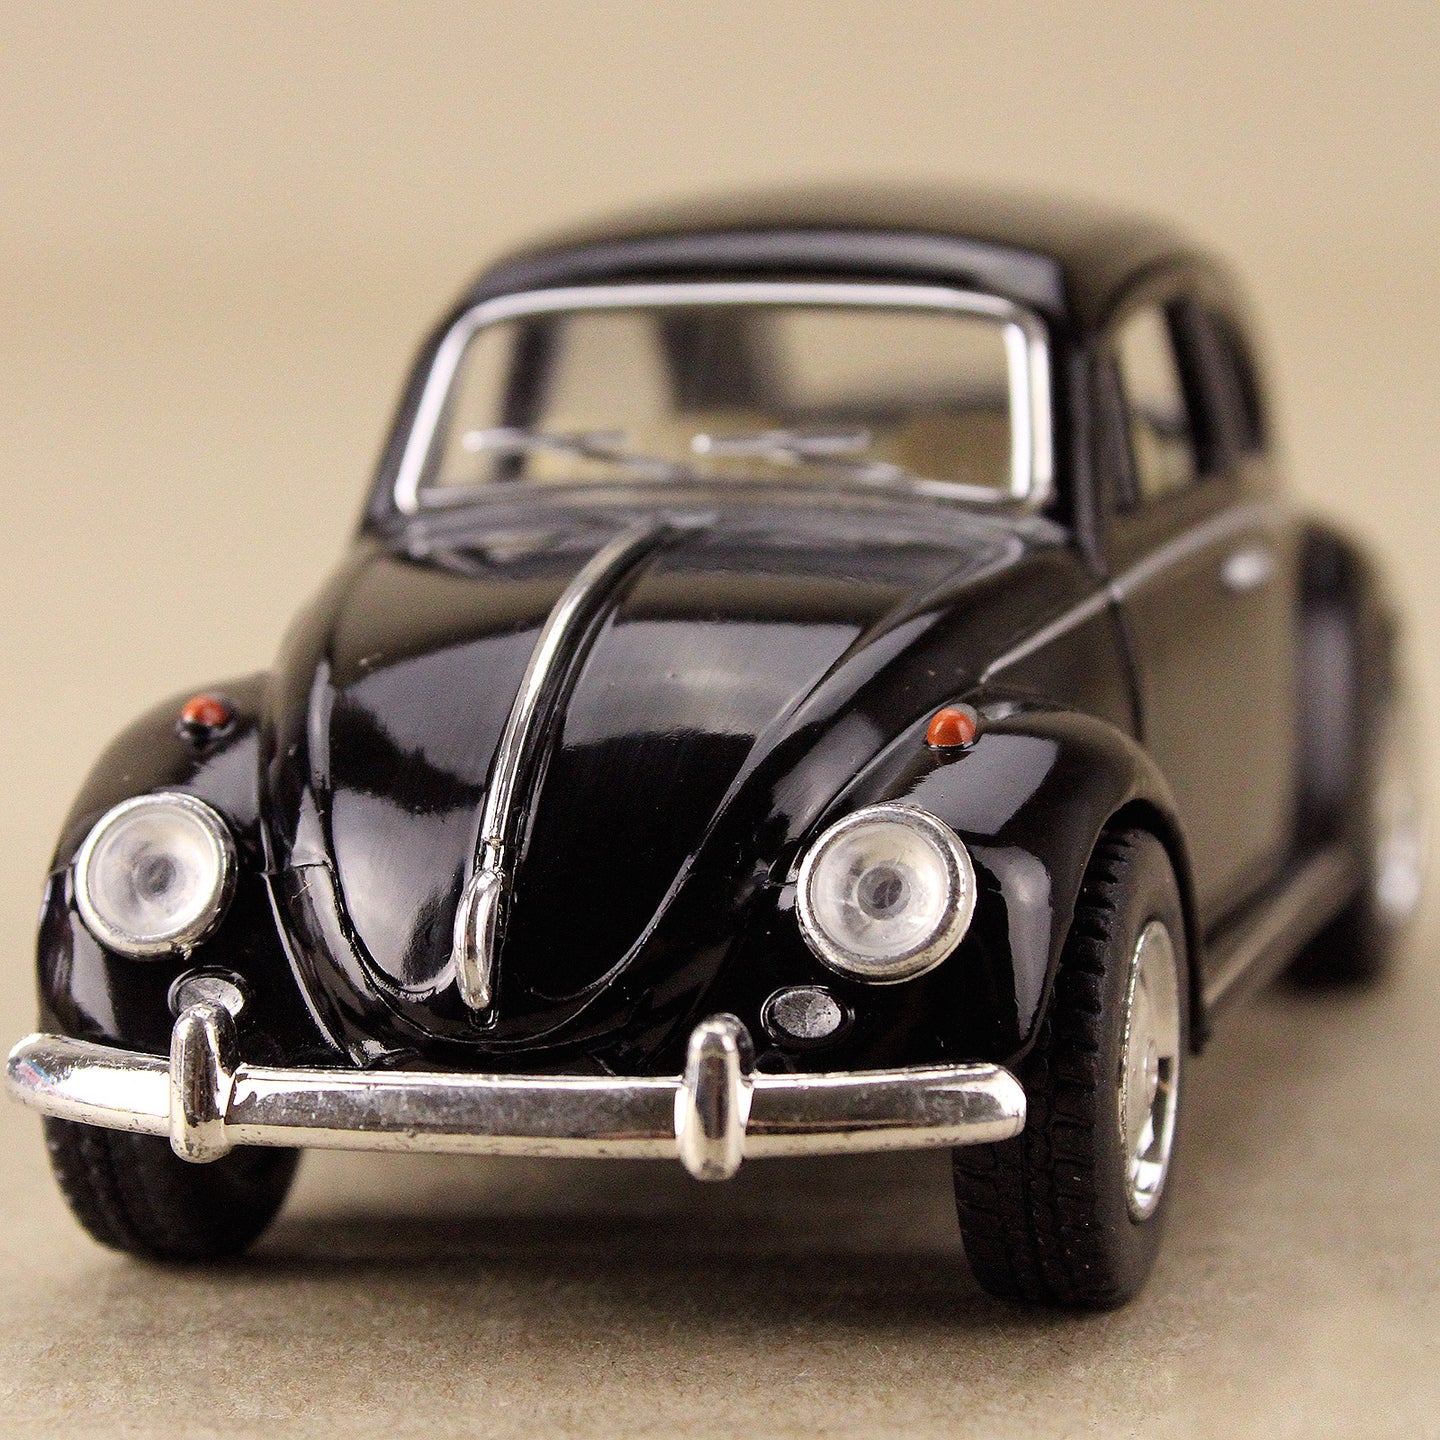 1967 Volkswagen Classical Beetle - Black